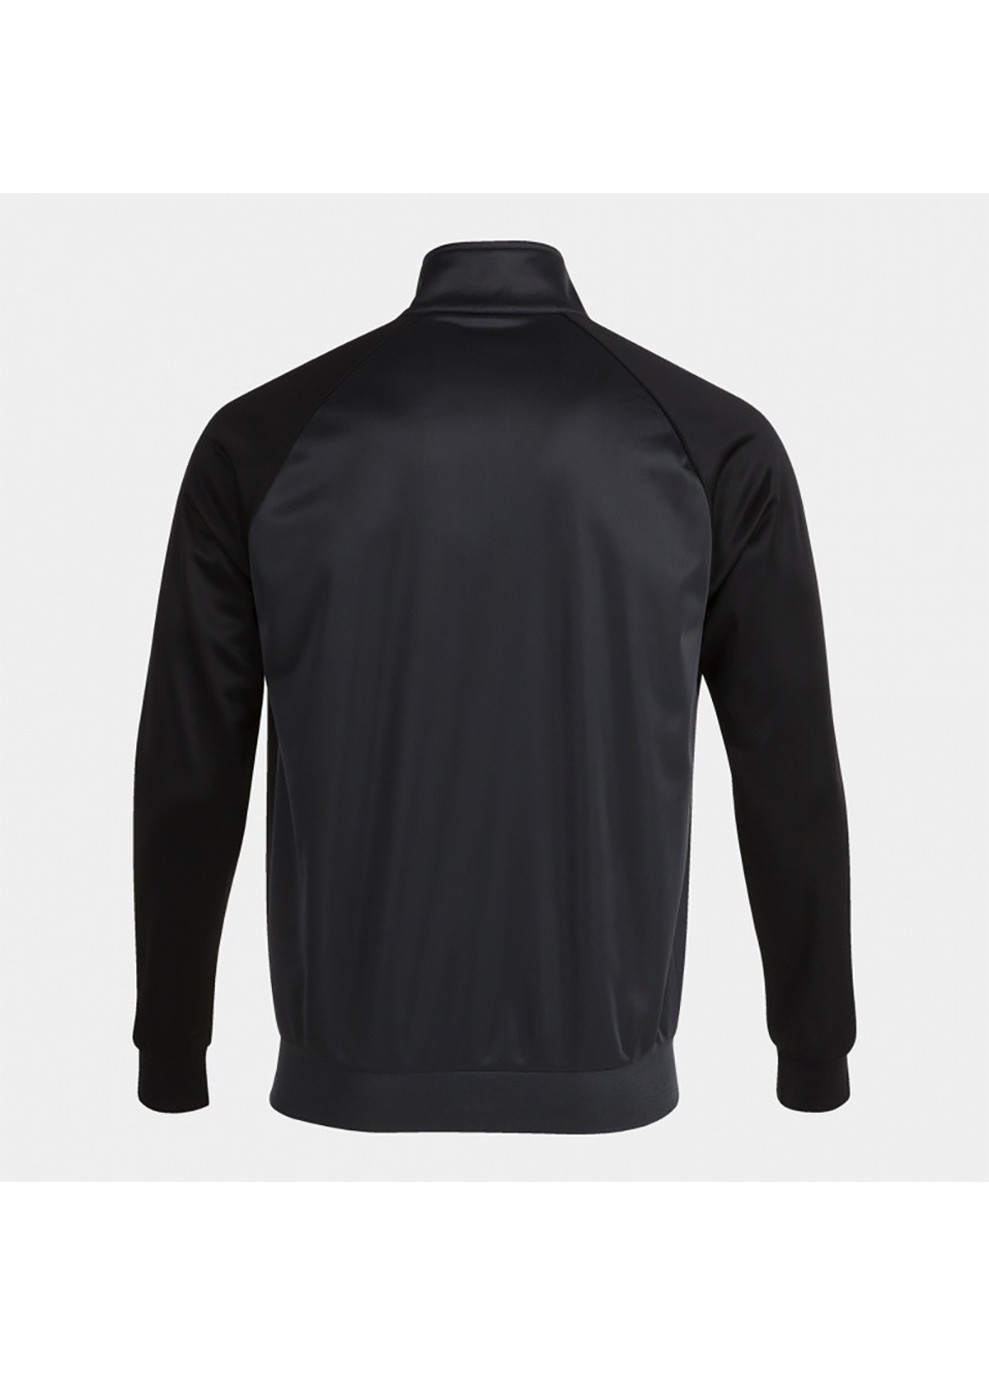 Спортивный костюм ACADEMY IV TRACKSUIT темно-серый,черный Joma (260646155)